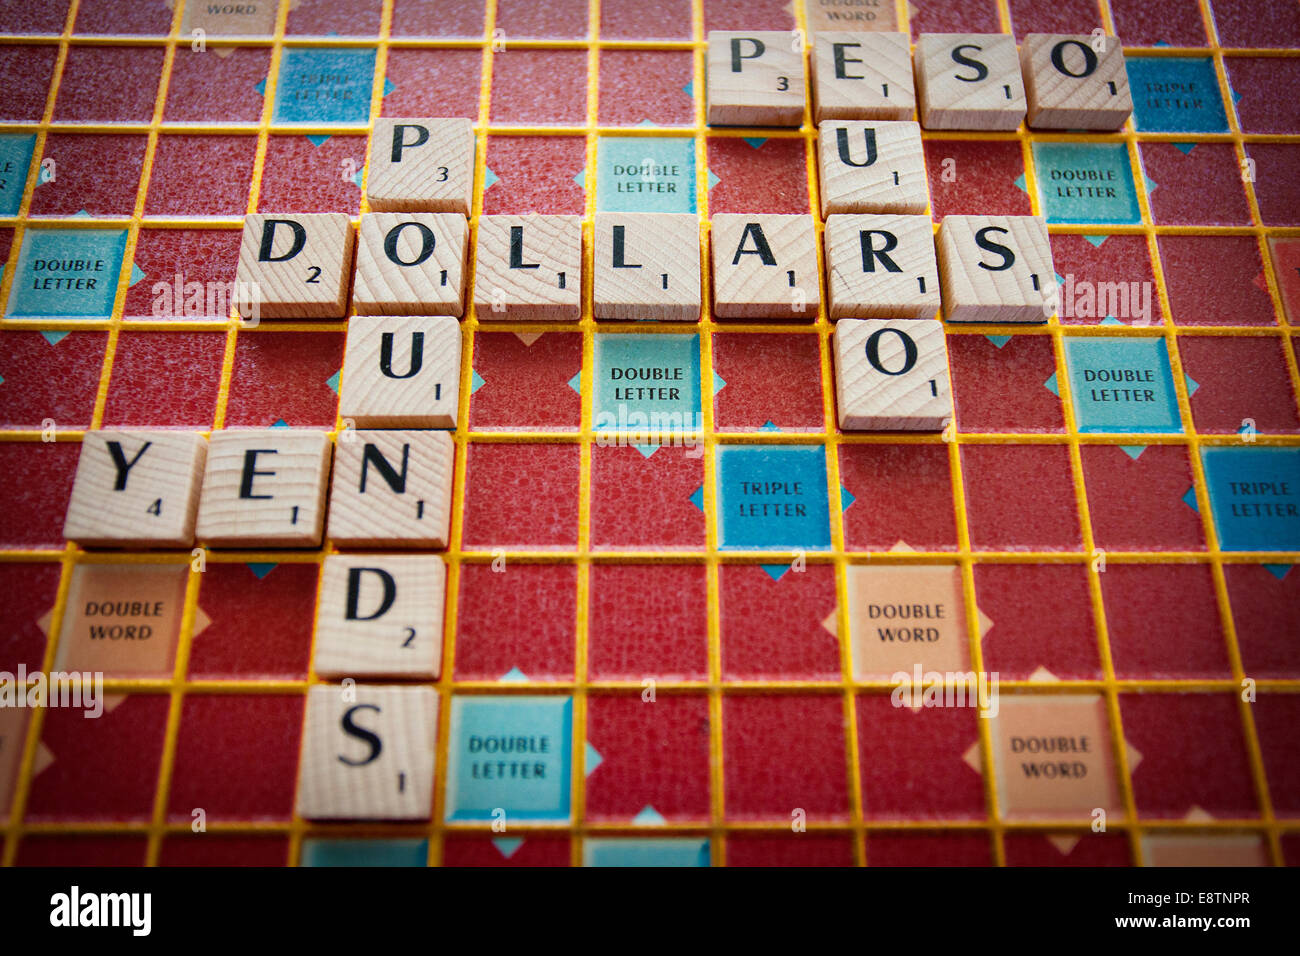 Verschiedenen Währungen der Welt auf einem Scrabble-Brett geschrieben Stockfoto